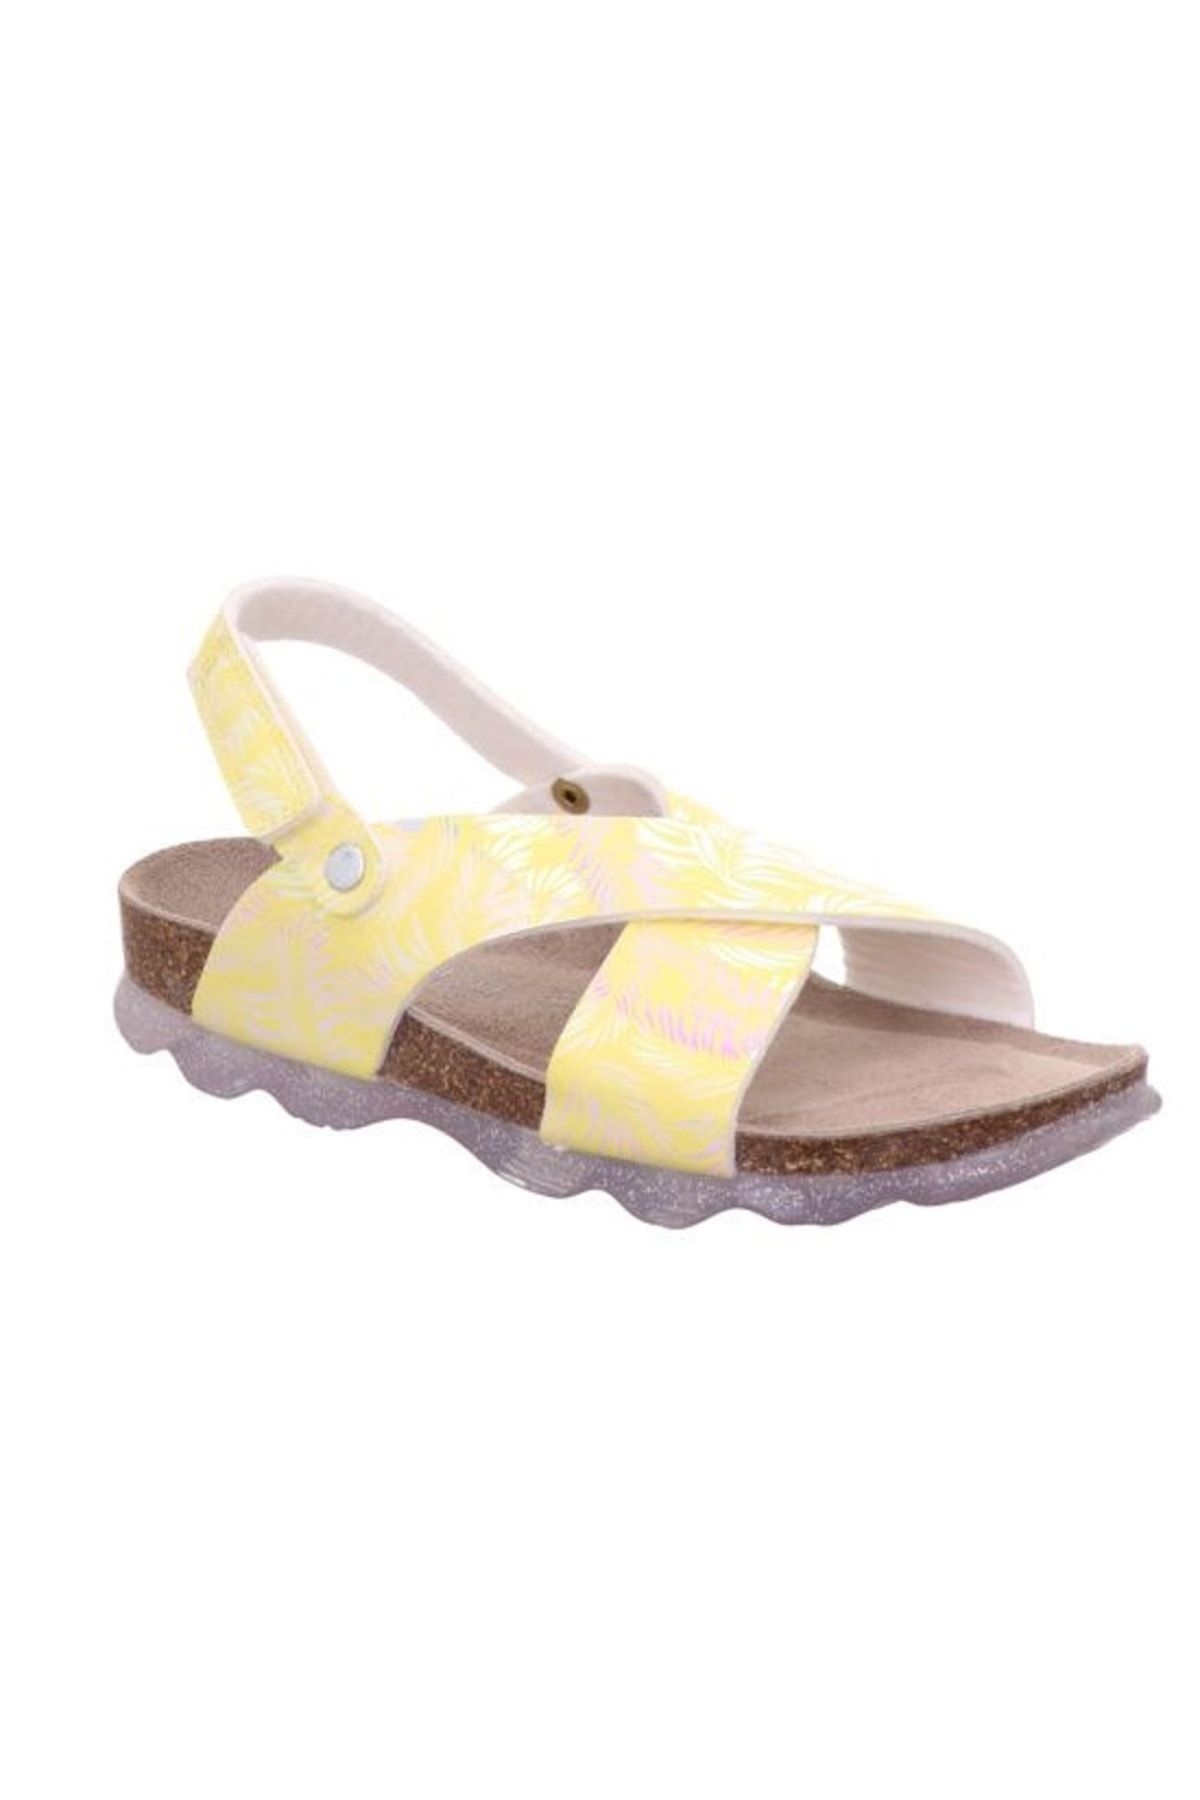 Superfit Cırtlı, Çapraz Bantlı Sandalet (medium/orta), Sarı Gümüş Desenli